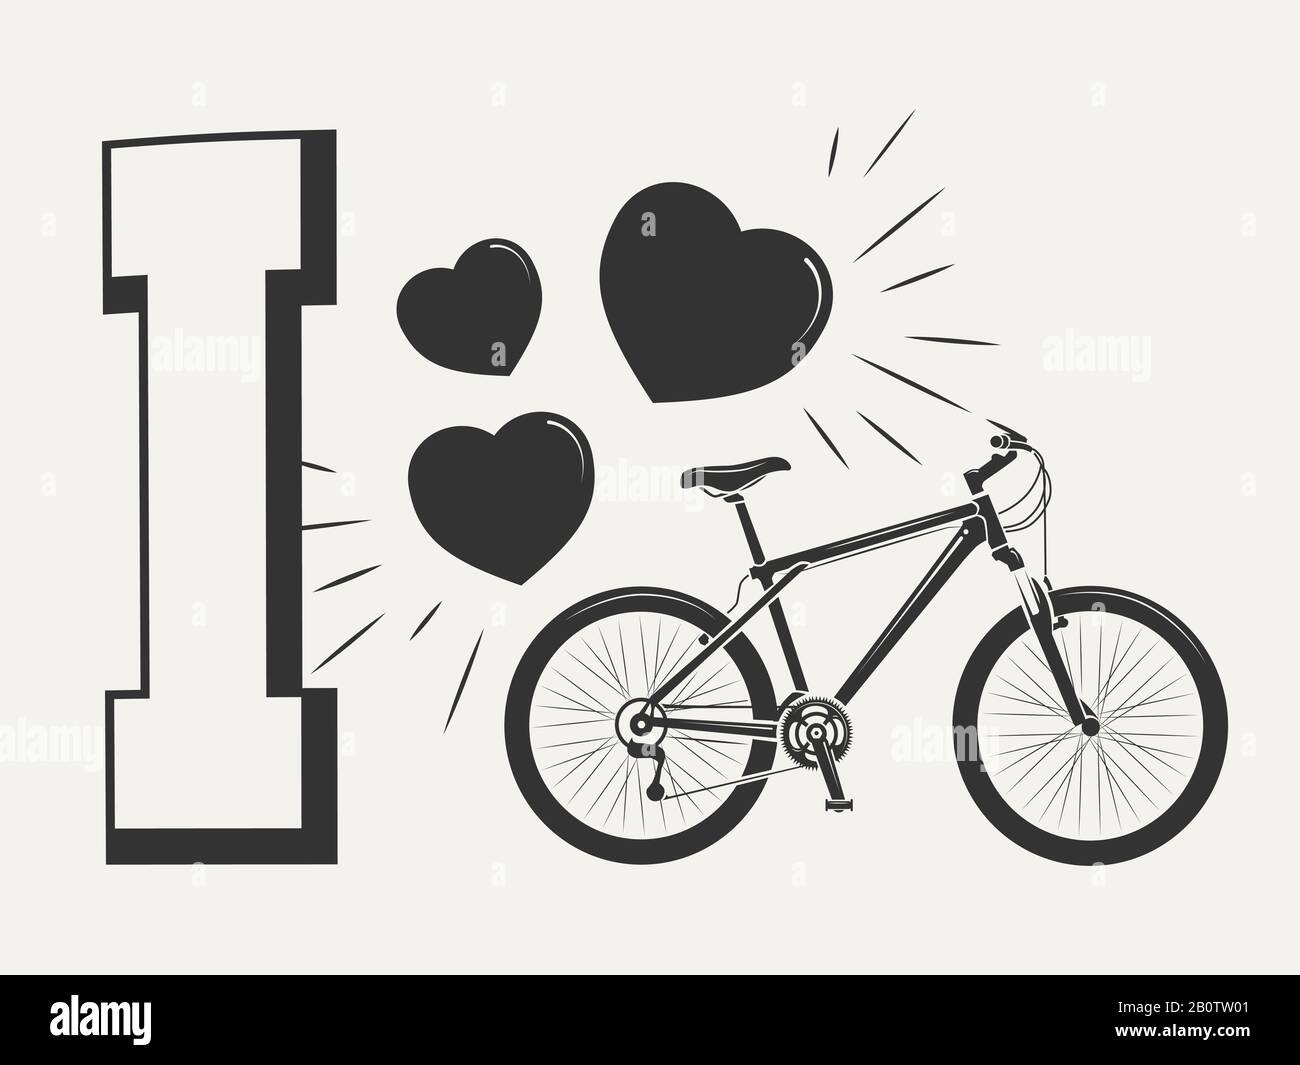 Ich liebe das Design mit Fahrradmuster - mit Fahrrad und Herz drucken. Print Sport Style Bike, Vektorgrafiken Stock Vektor